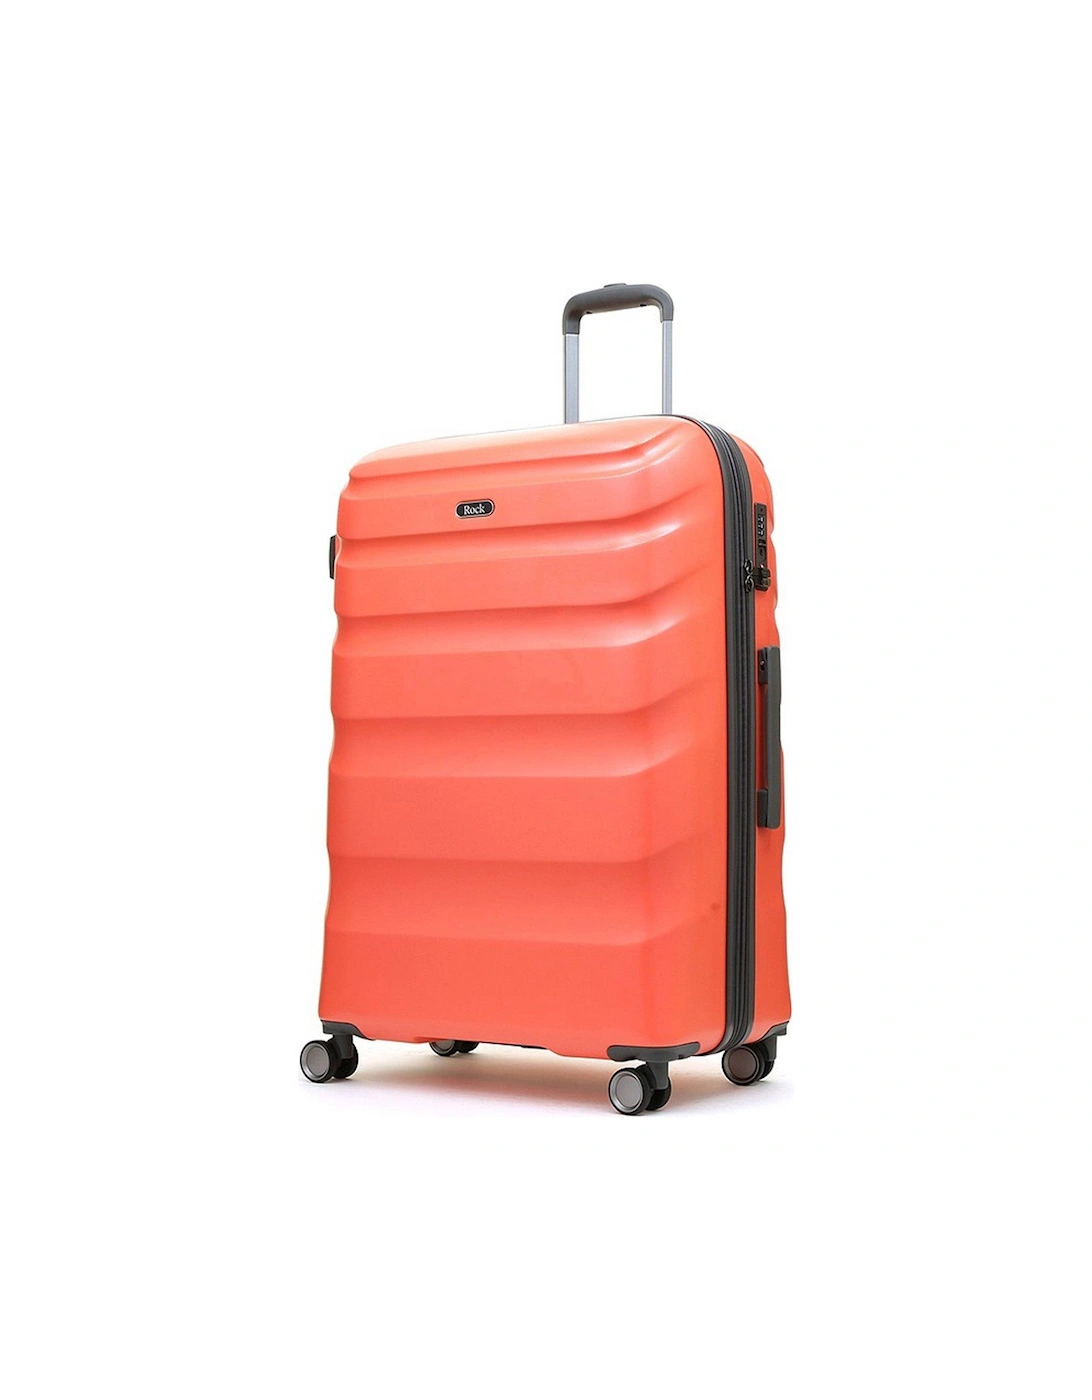 Bali 8 Wheel Hardshell Large Suitcase - Coral, 3 of 2